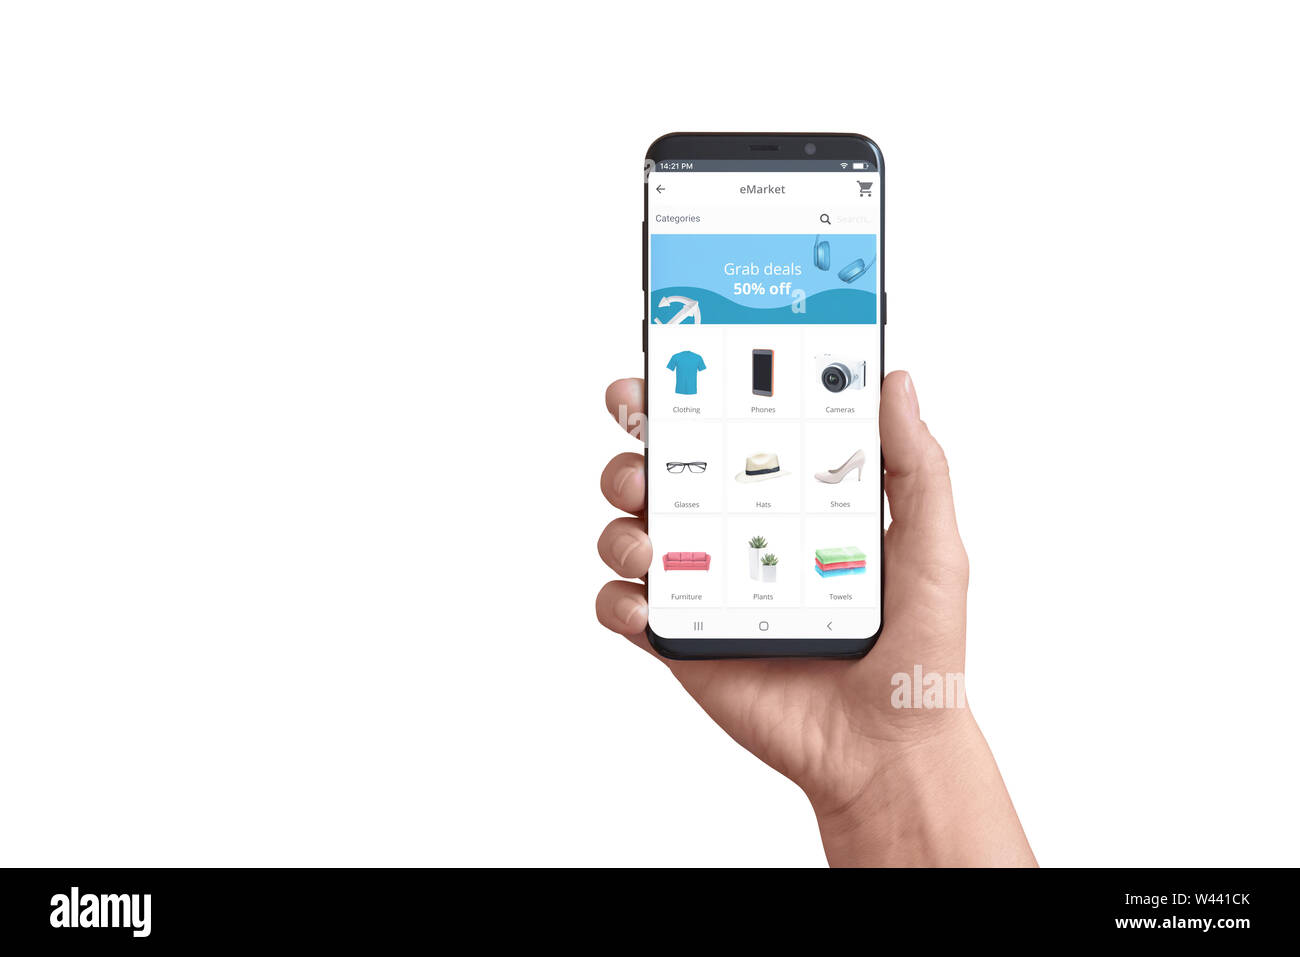 Isolierte smart phone in Hand mit Online Store App. Konzept der flachen Design App mit Abkommen ad Greifen und Produktkategorien. Stockfoto